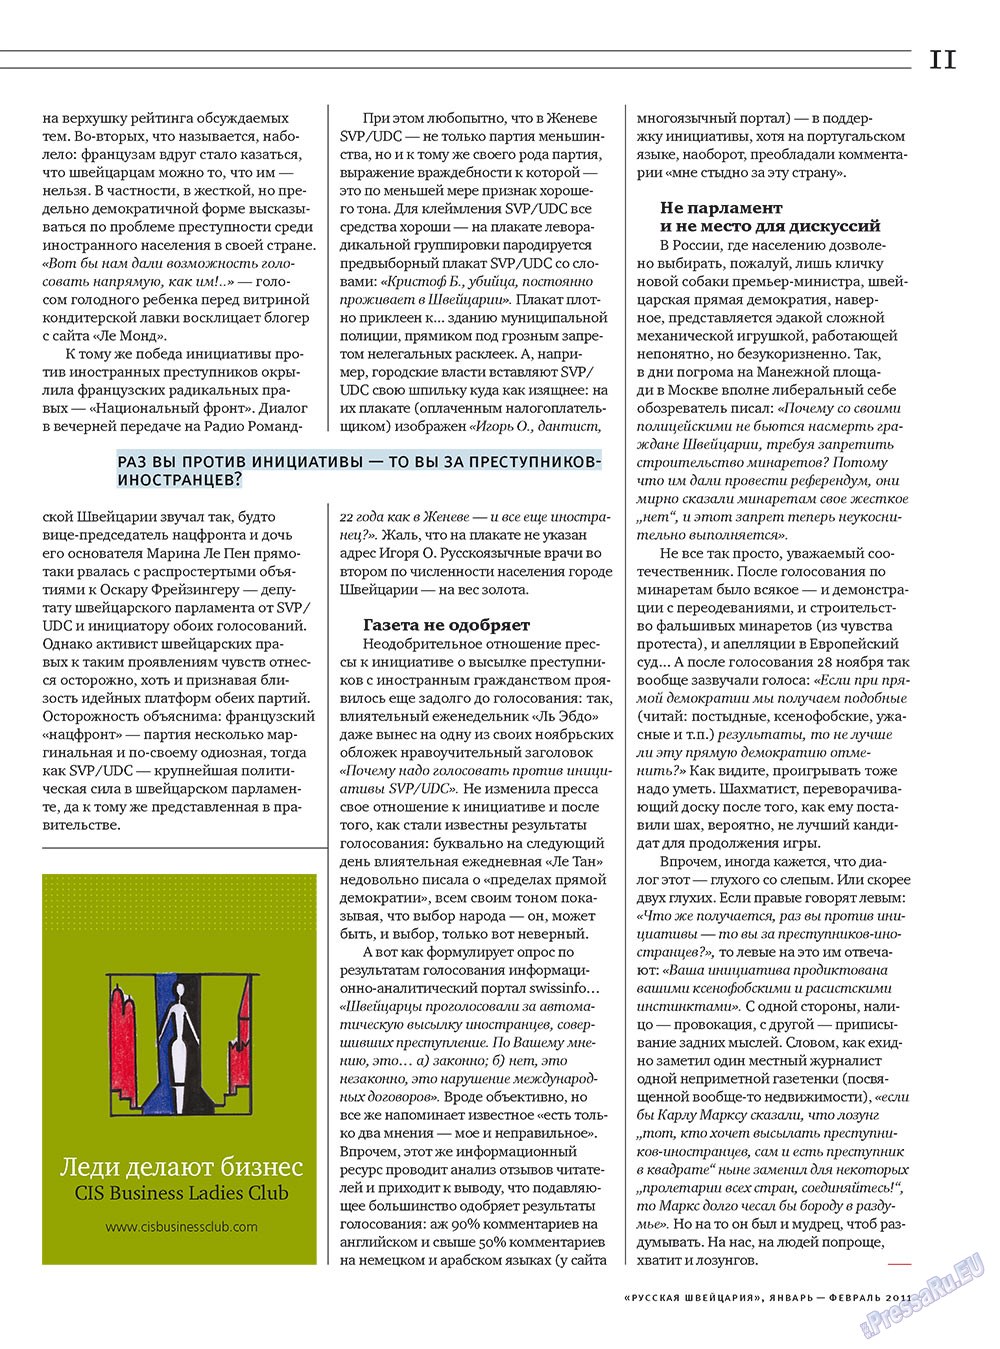 Русская Швейцария, журнал. 2011 №1 стр.11